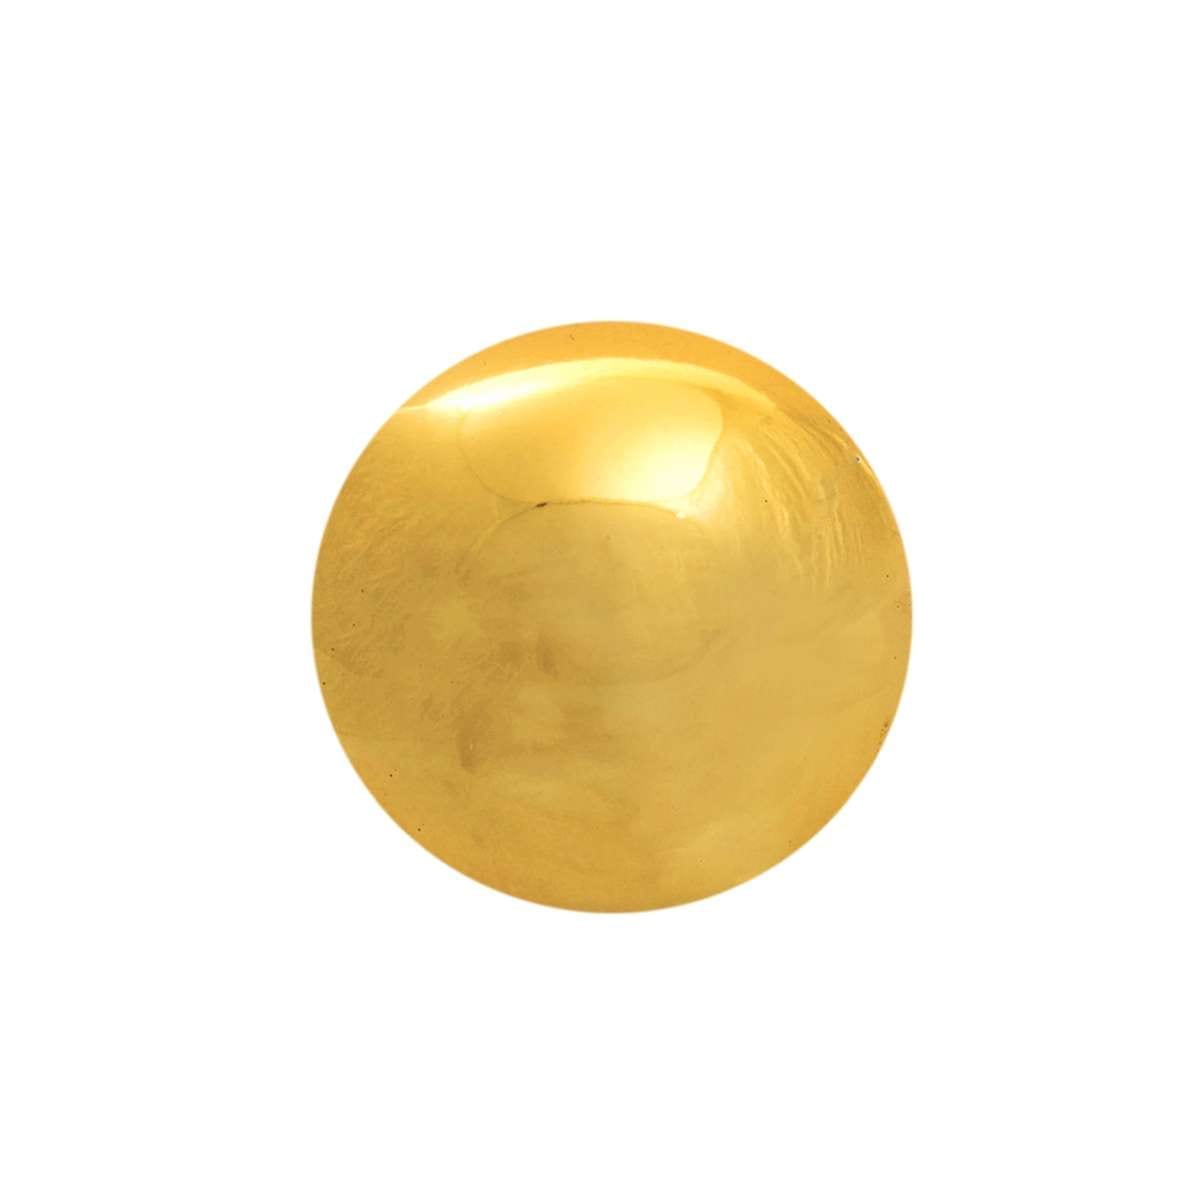 Διακοσμητική Μπάλα Κεραμική Χρυσή Art Et Lumiere 10εκ. 02810 (Υλικό: Κεραμικό, Χρώμα: Χρυσό ) - Art Et Lumiere - lumiere_02810 137795